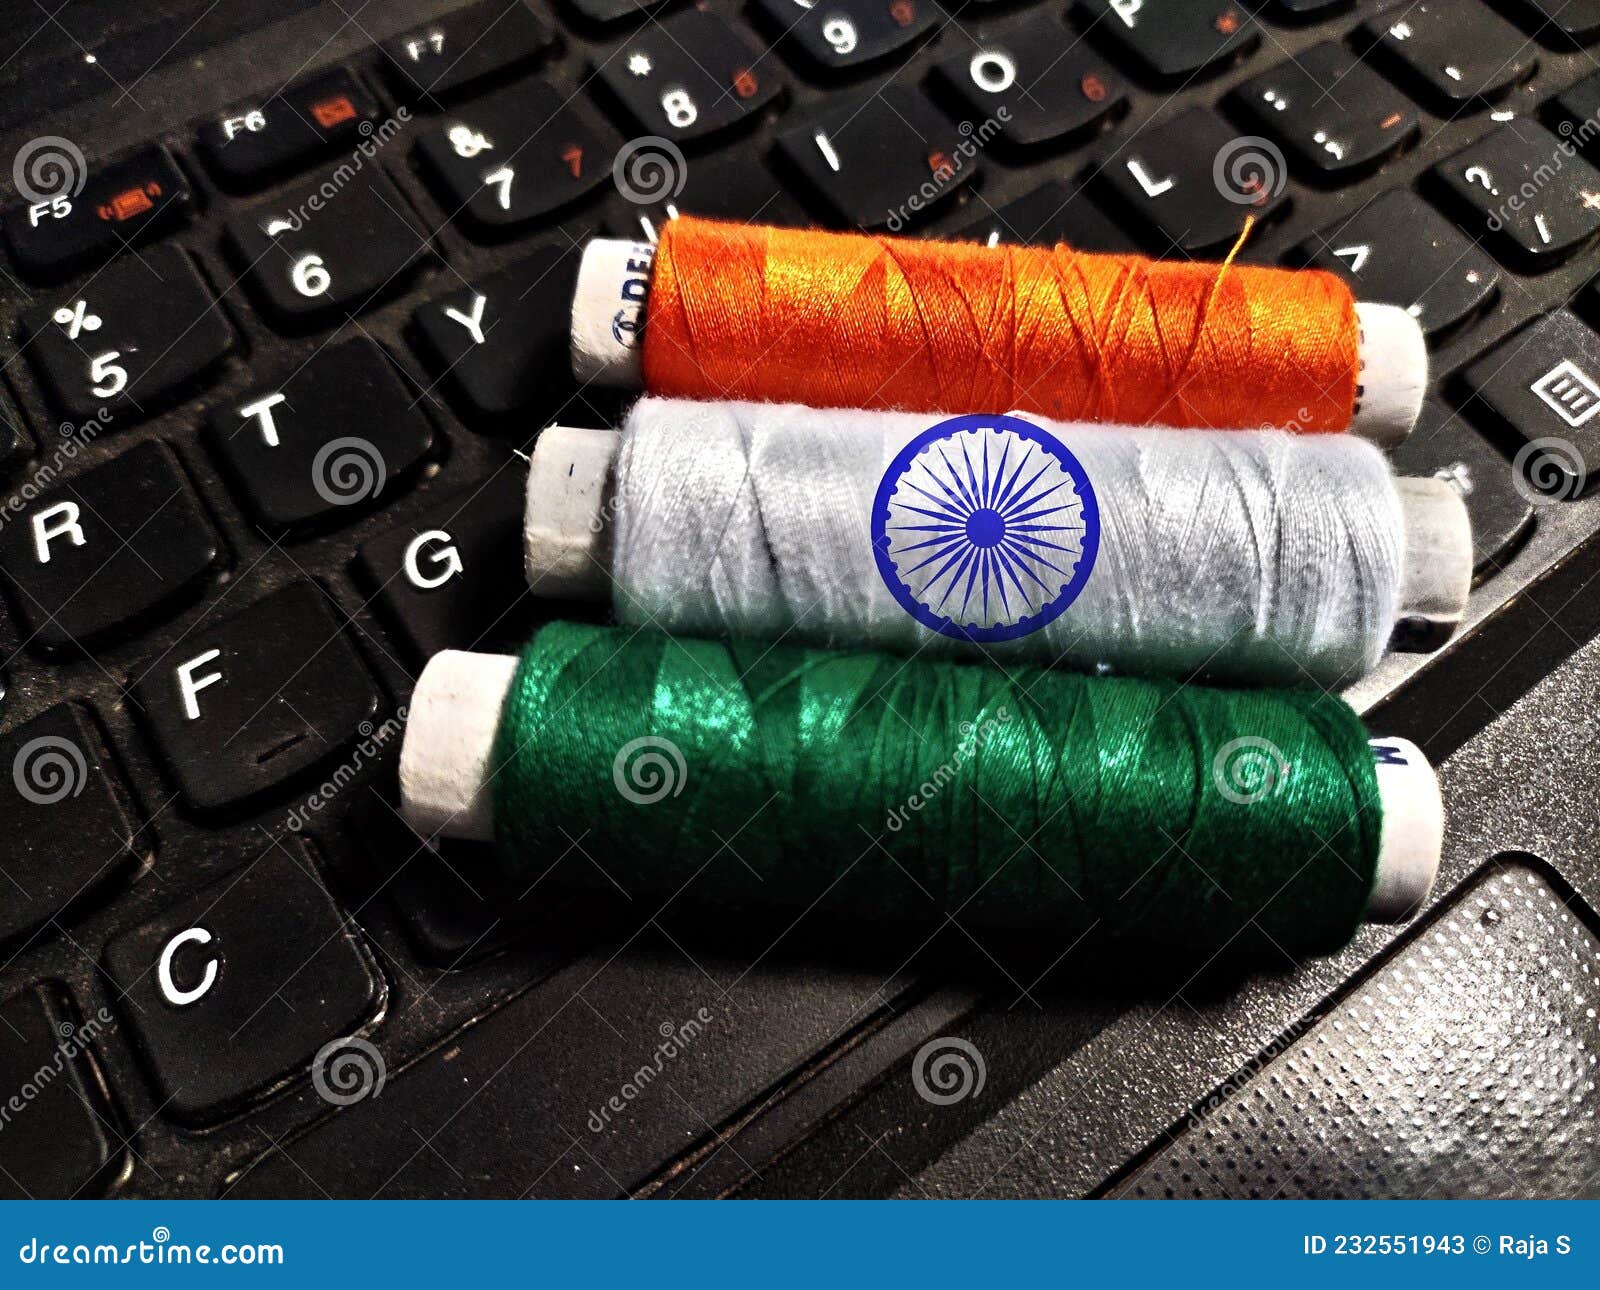 laptop keyboard in indian flog